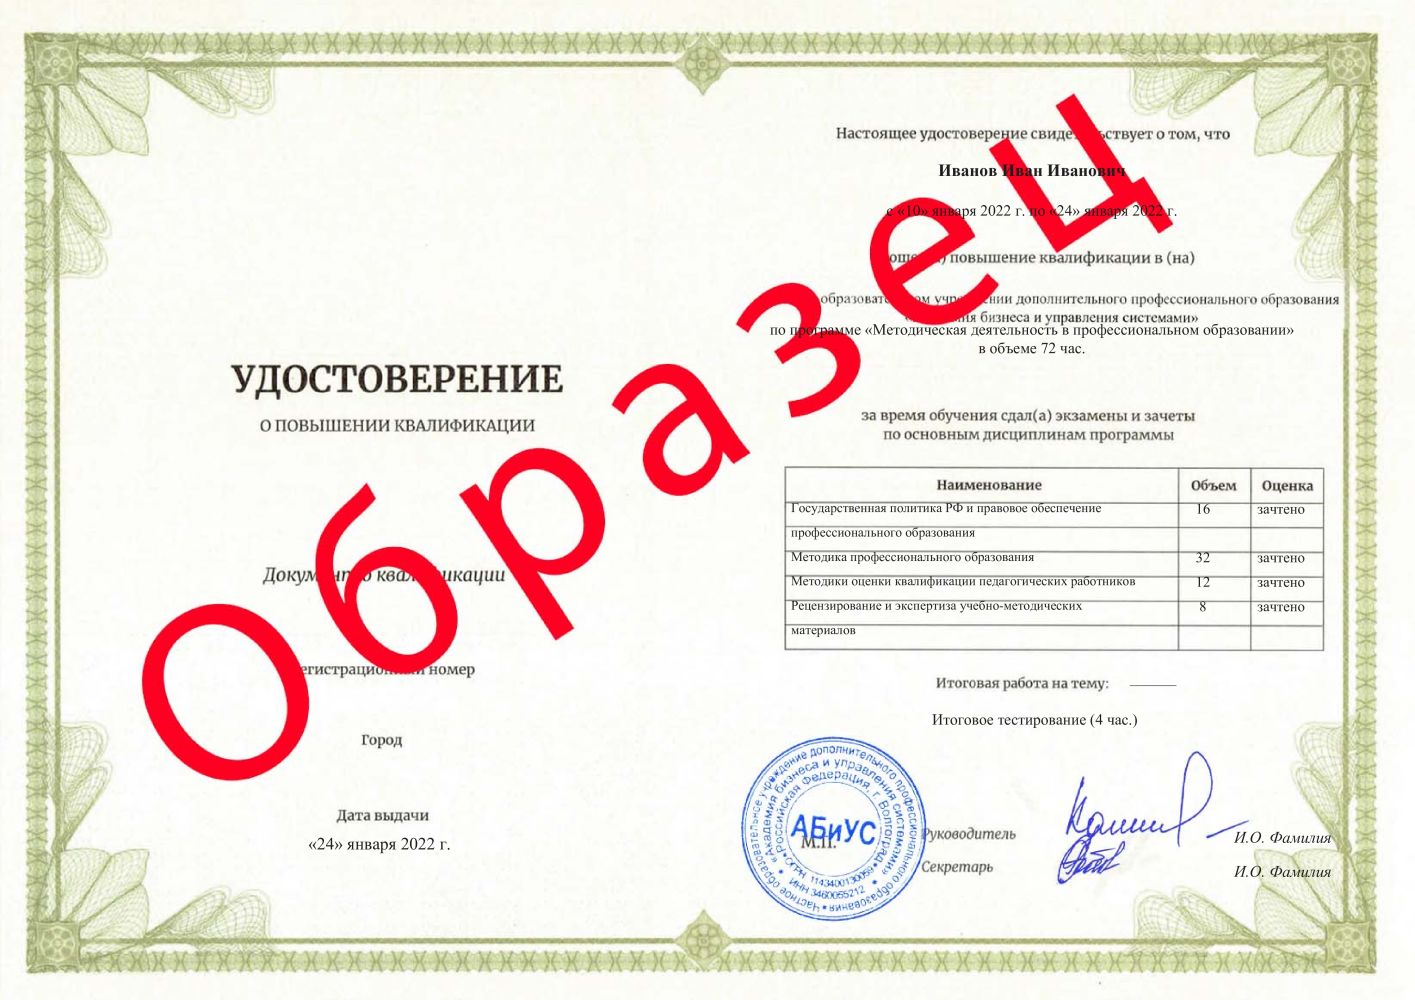 Удостоверение Методическая деятельность в профессиональном образовании 72 часа 2813 руб.